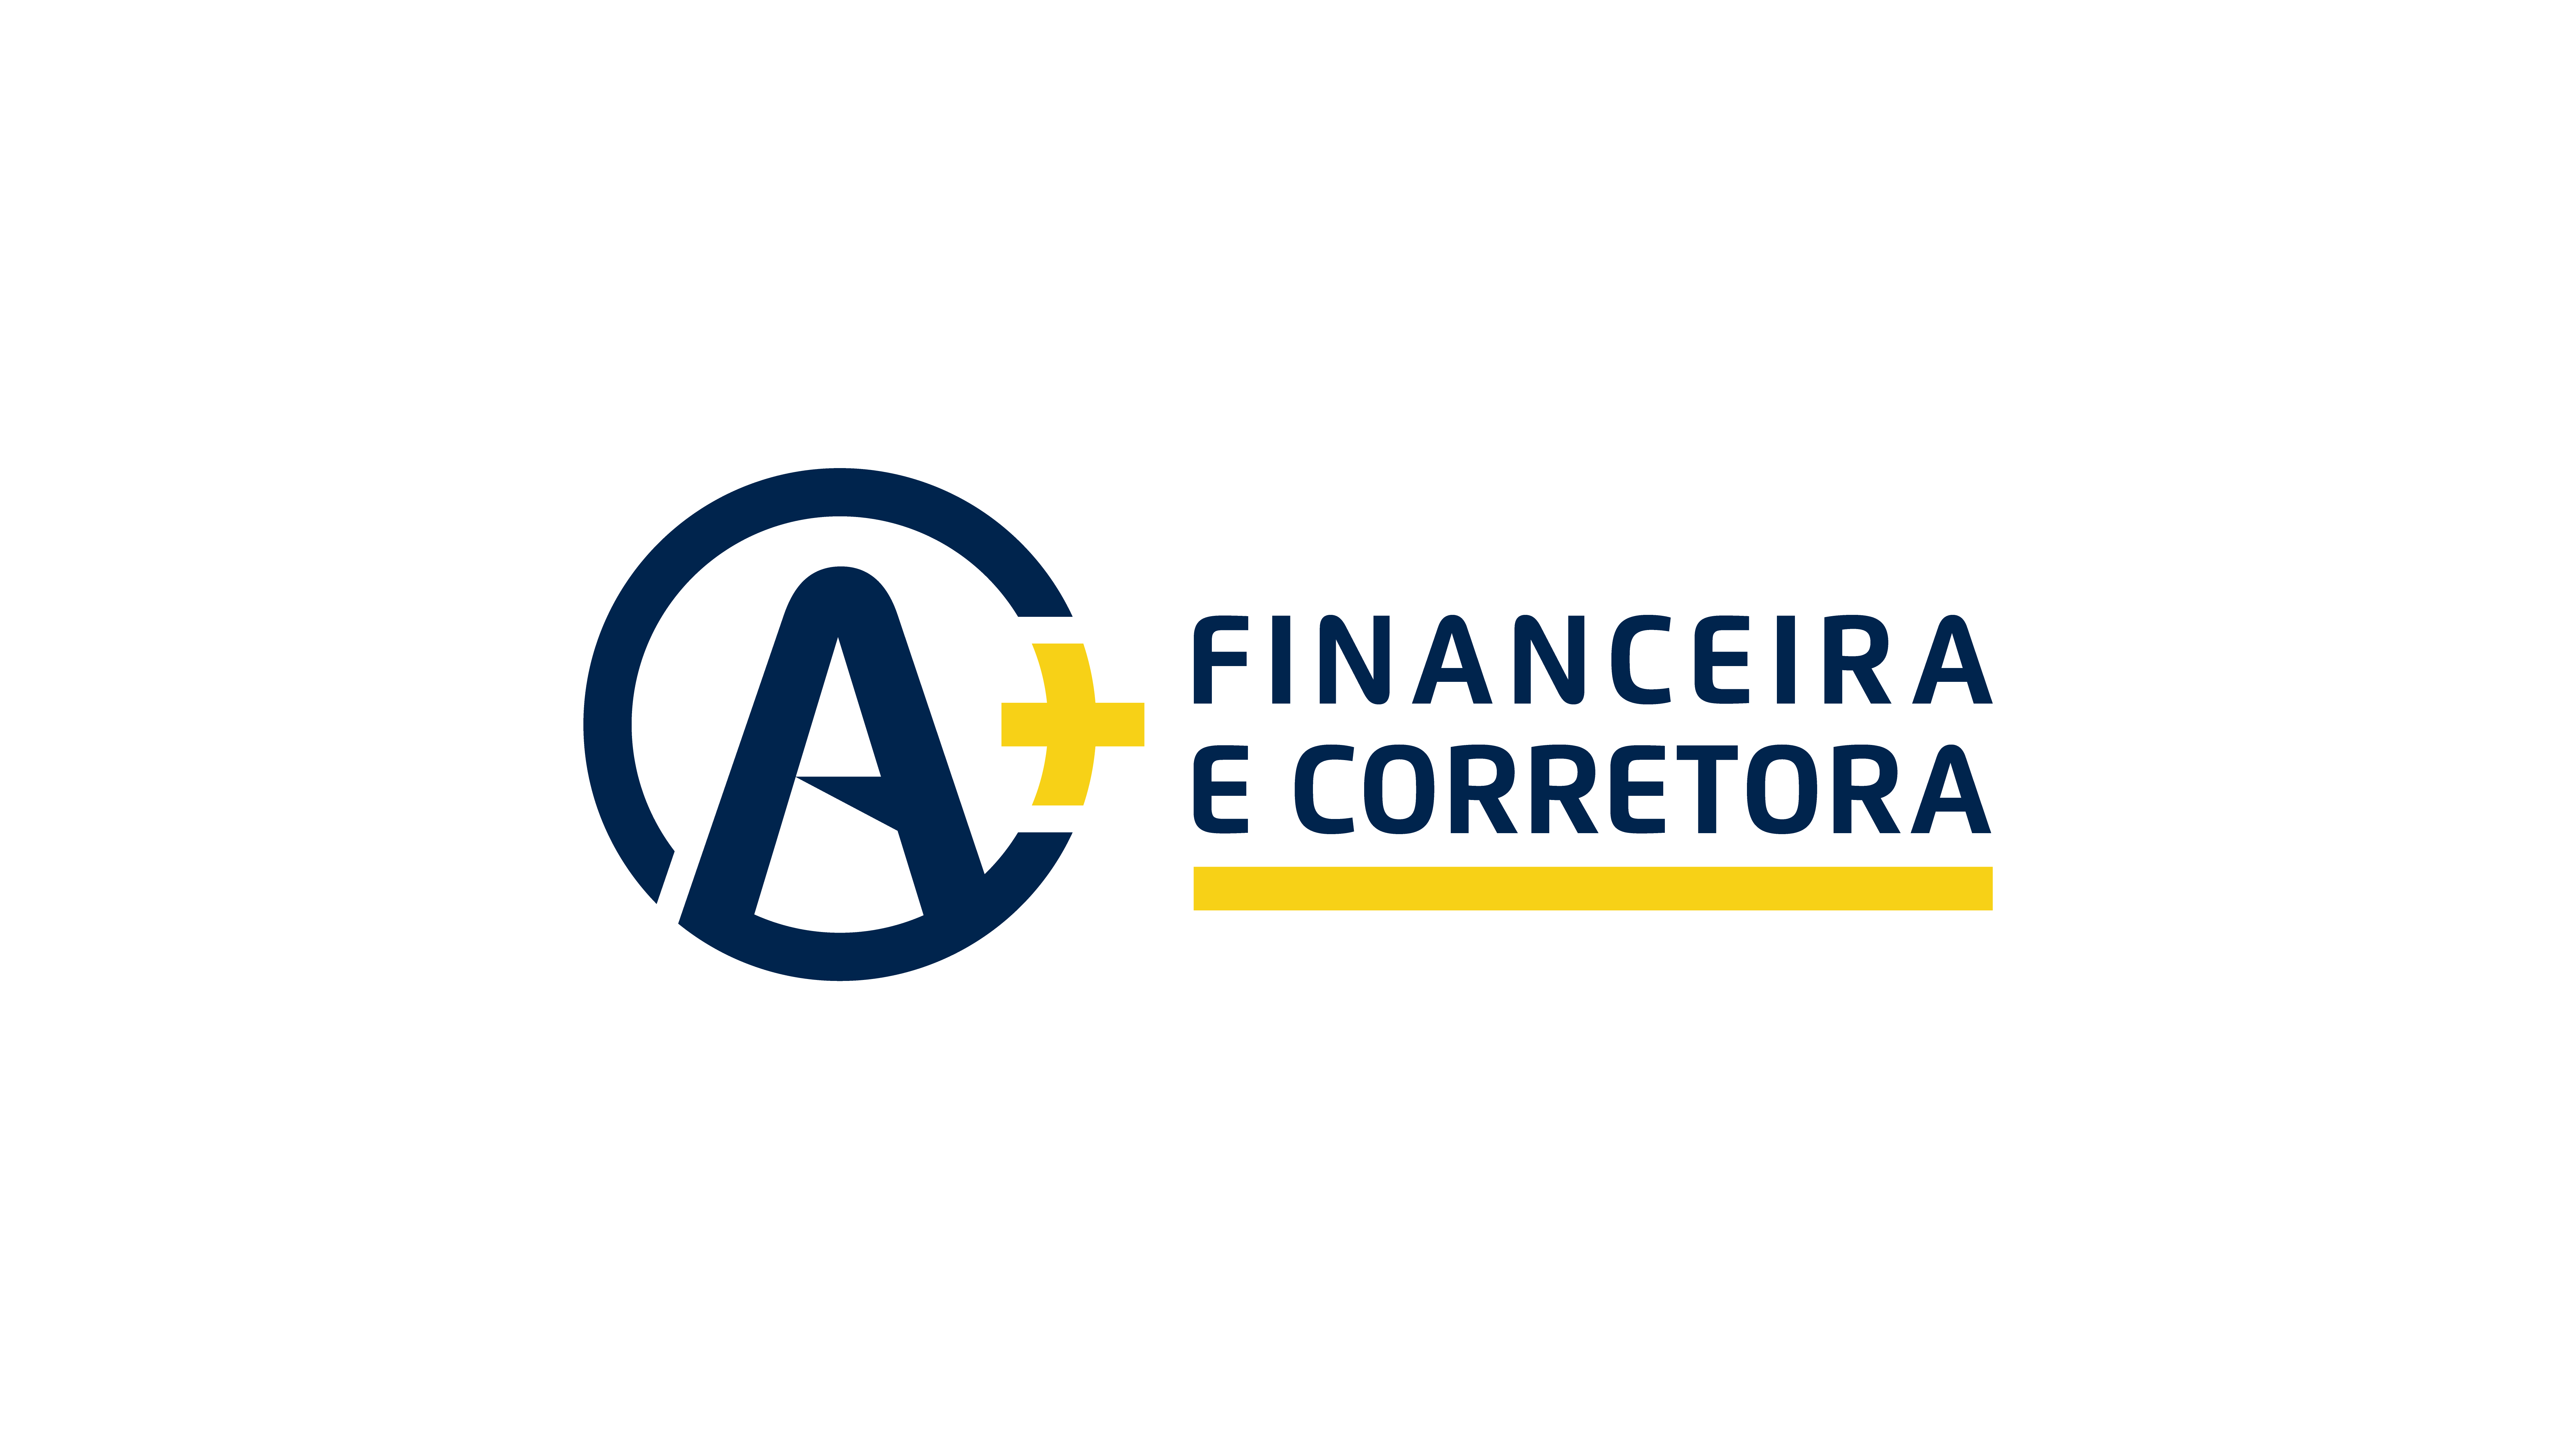 A+ FINANCEIRA E CORRETORA - Identidade Visual (3)